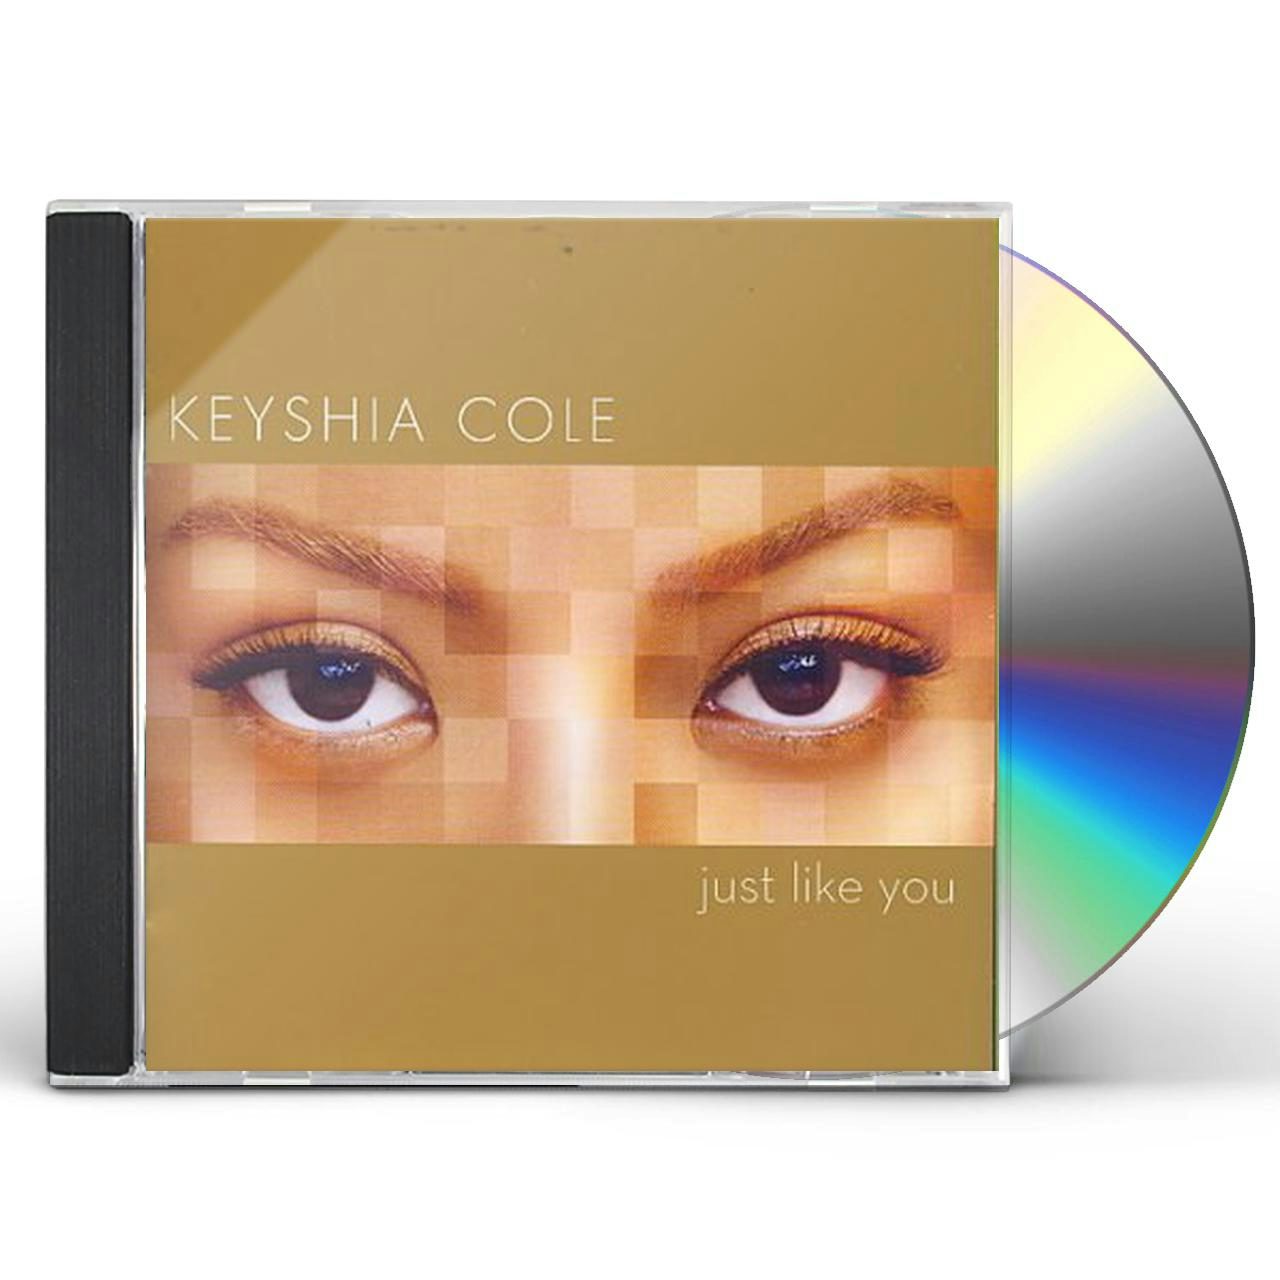 Keyshia Cole JUST LIKE YOU CD $17.49$15.49